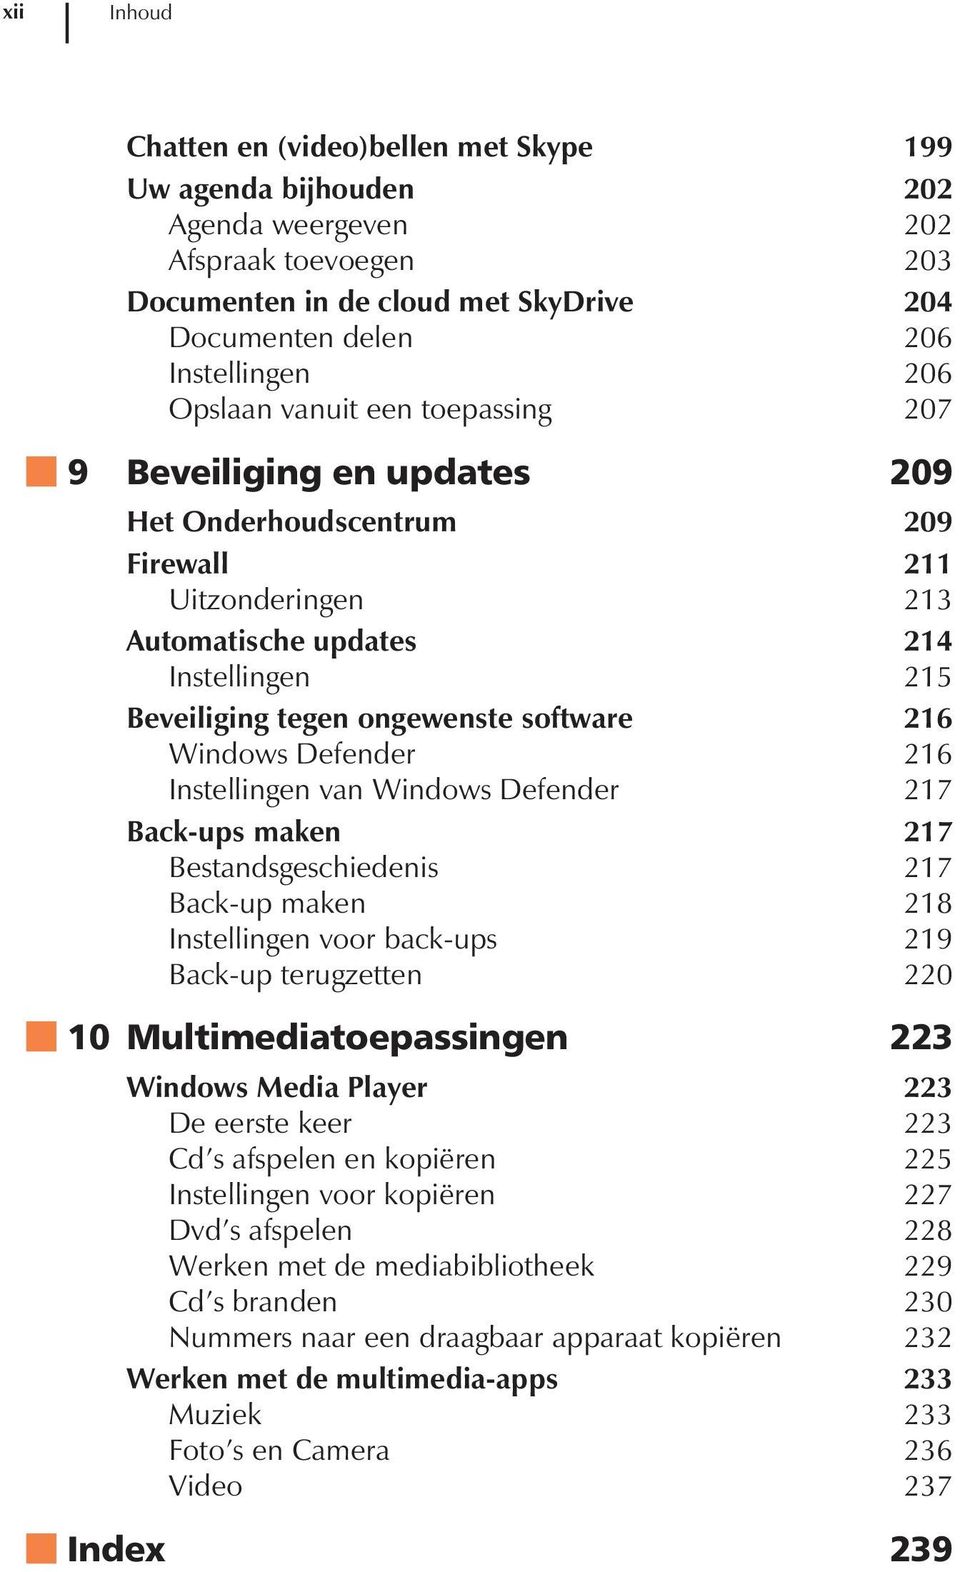 software 216 Windows Defender 216 Instellingen van Windows Defender 217 Back-ups maken 217 Bestandsgeschiedenis 217 Back-up maken 218 Instellingen voor back-ups 219 Back-up terugzetten 220 10